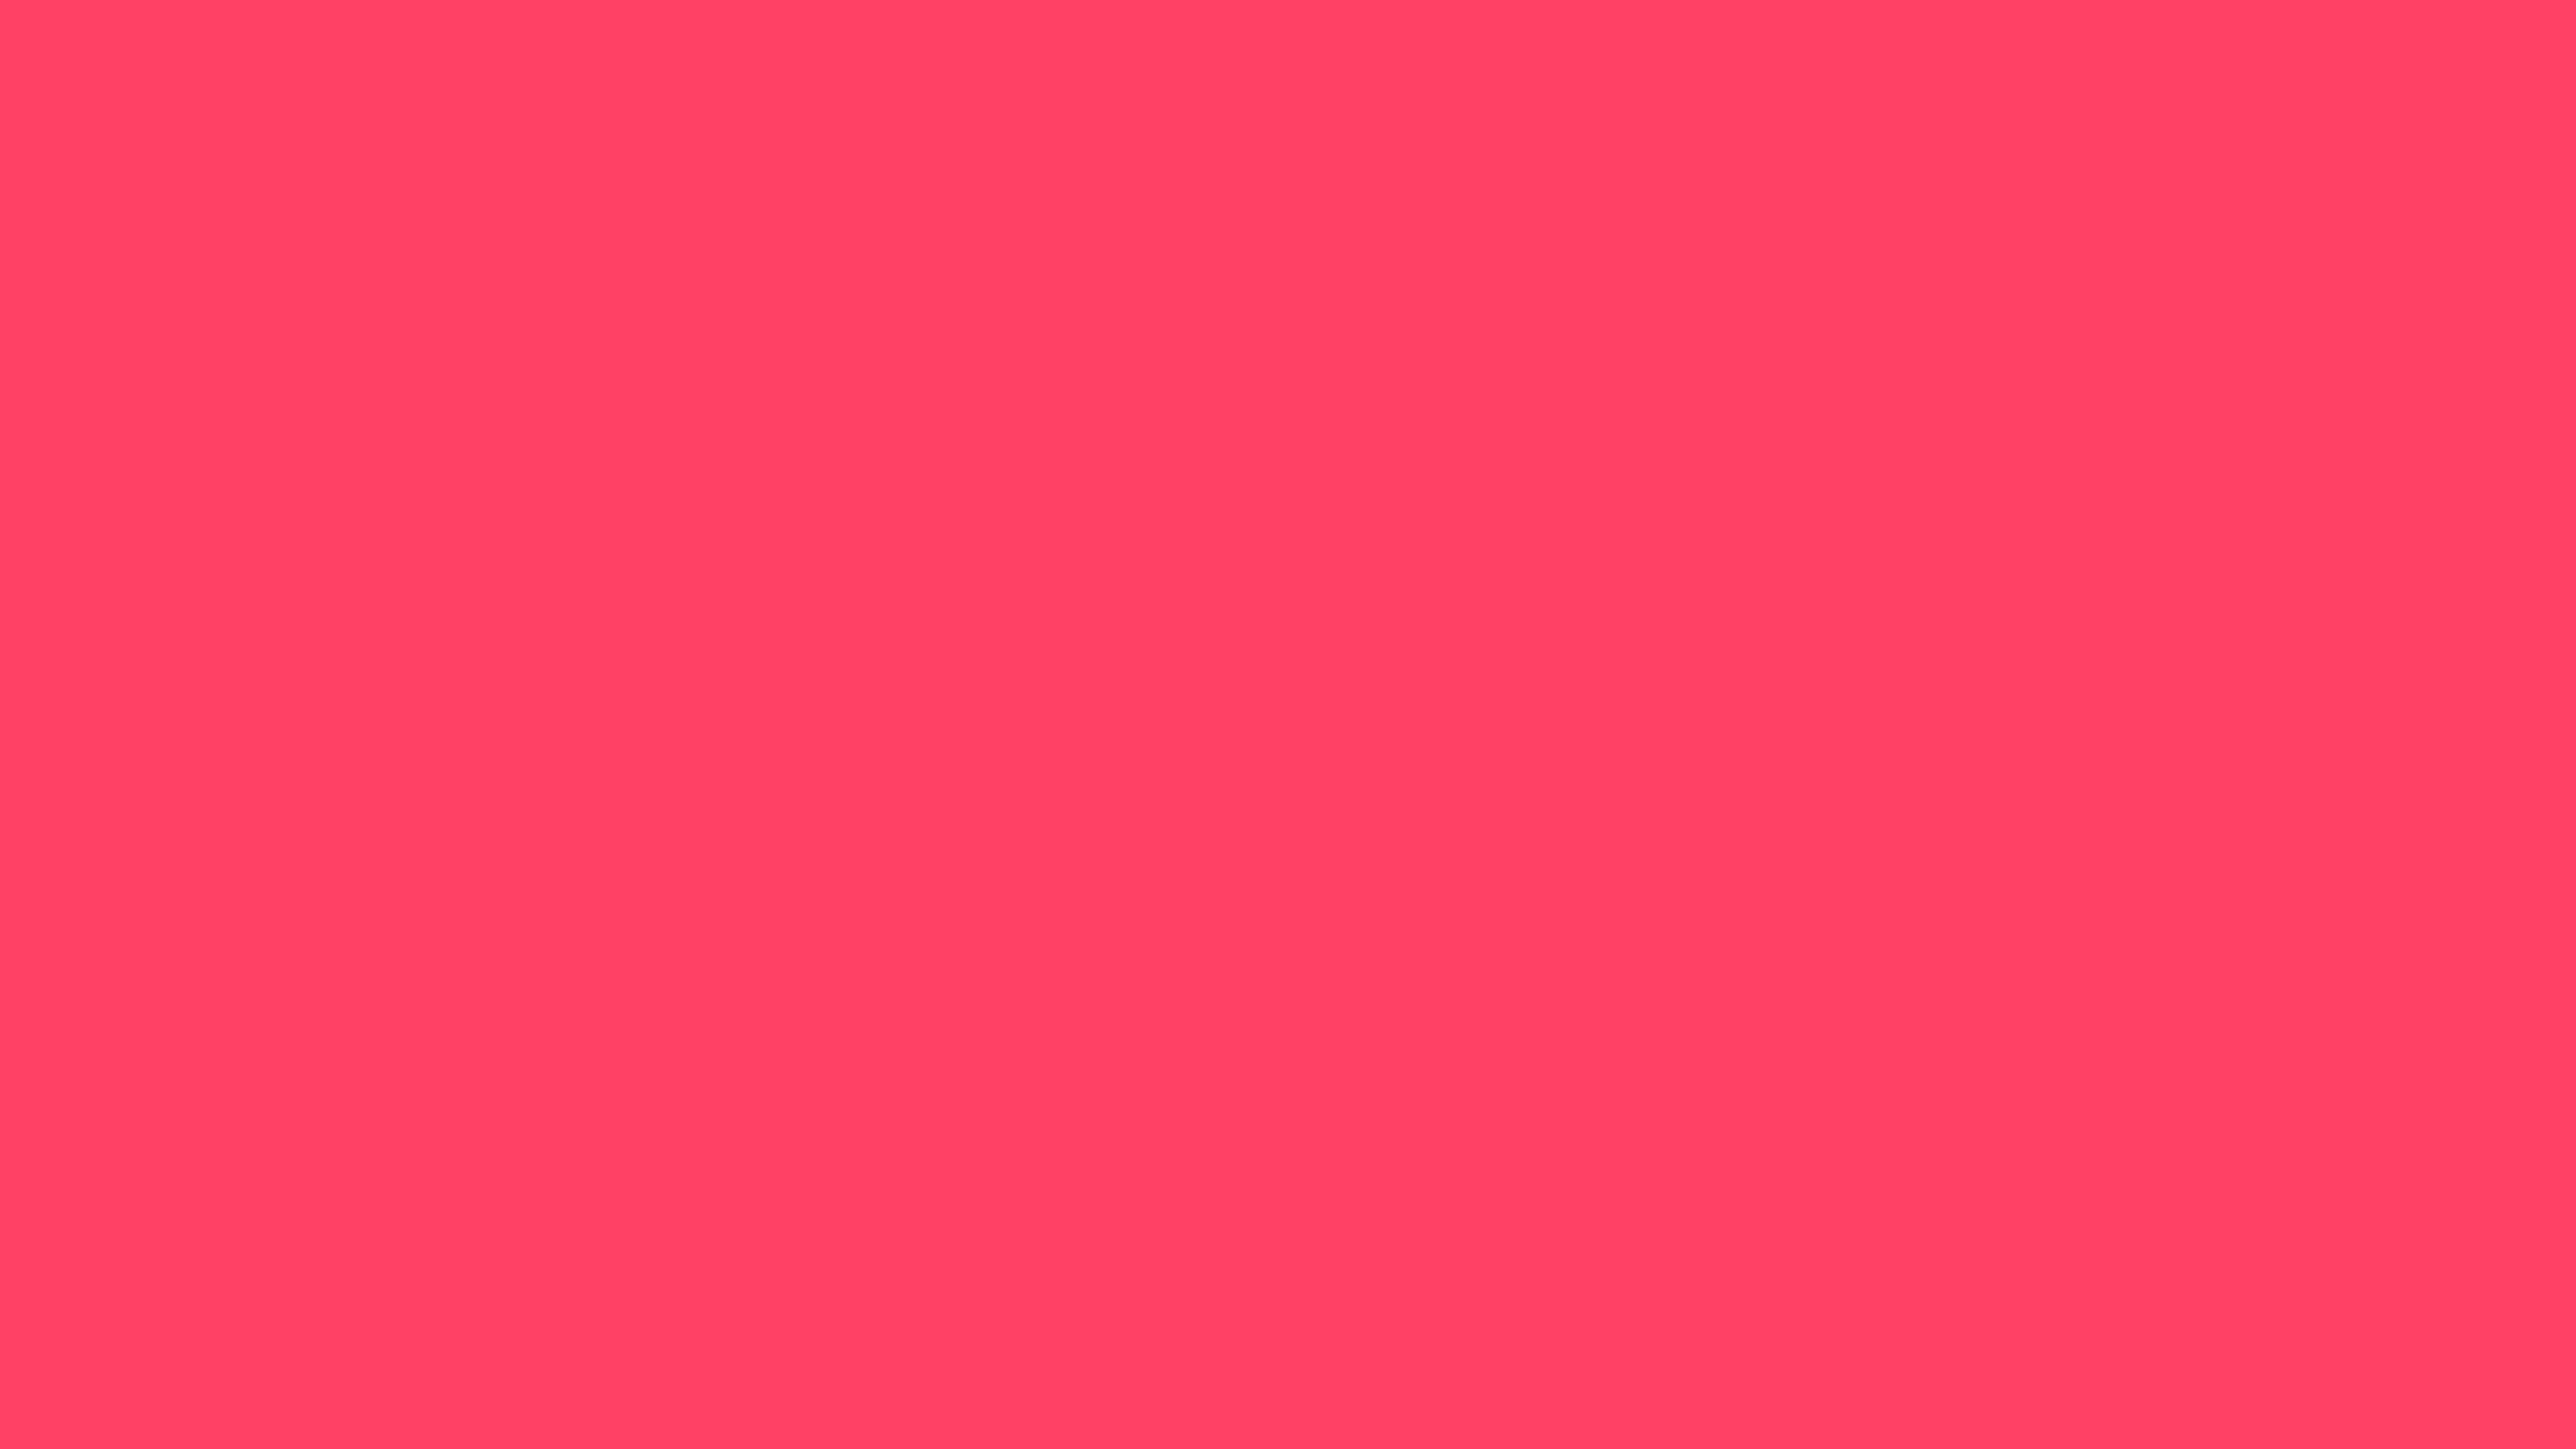 3840x2160 Neon Fuchsia Solid Color Background